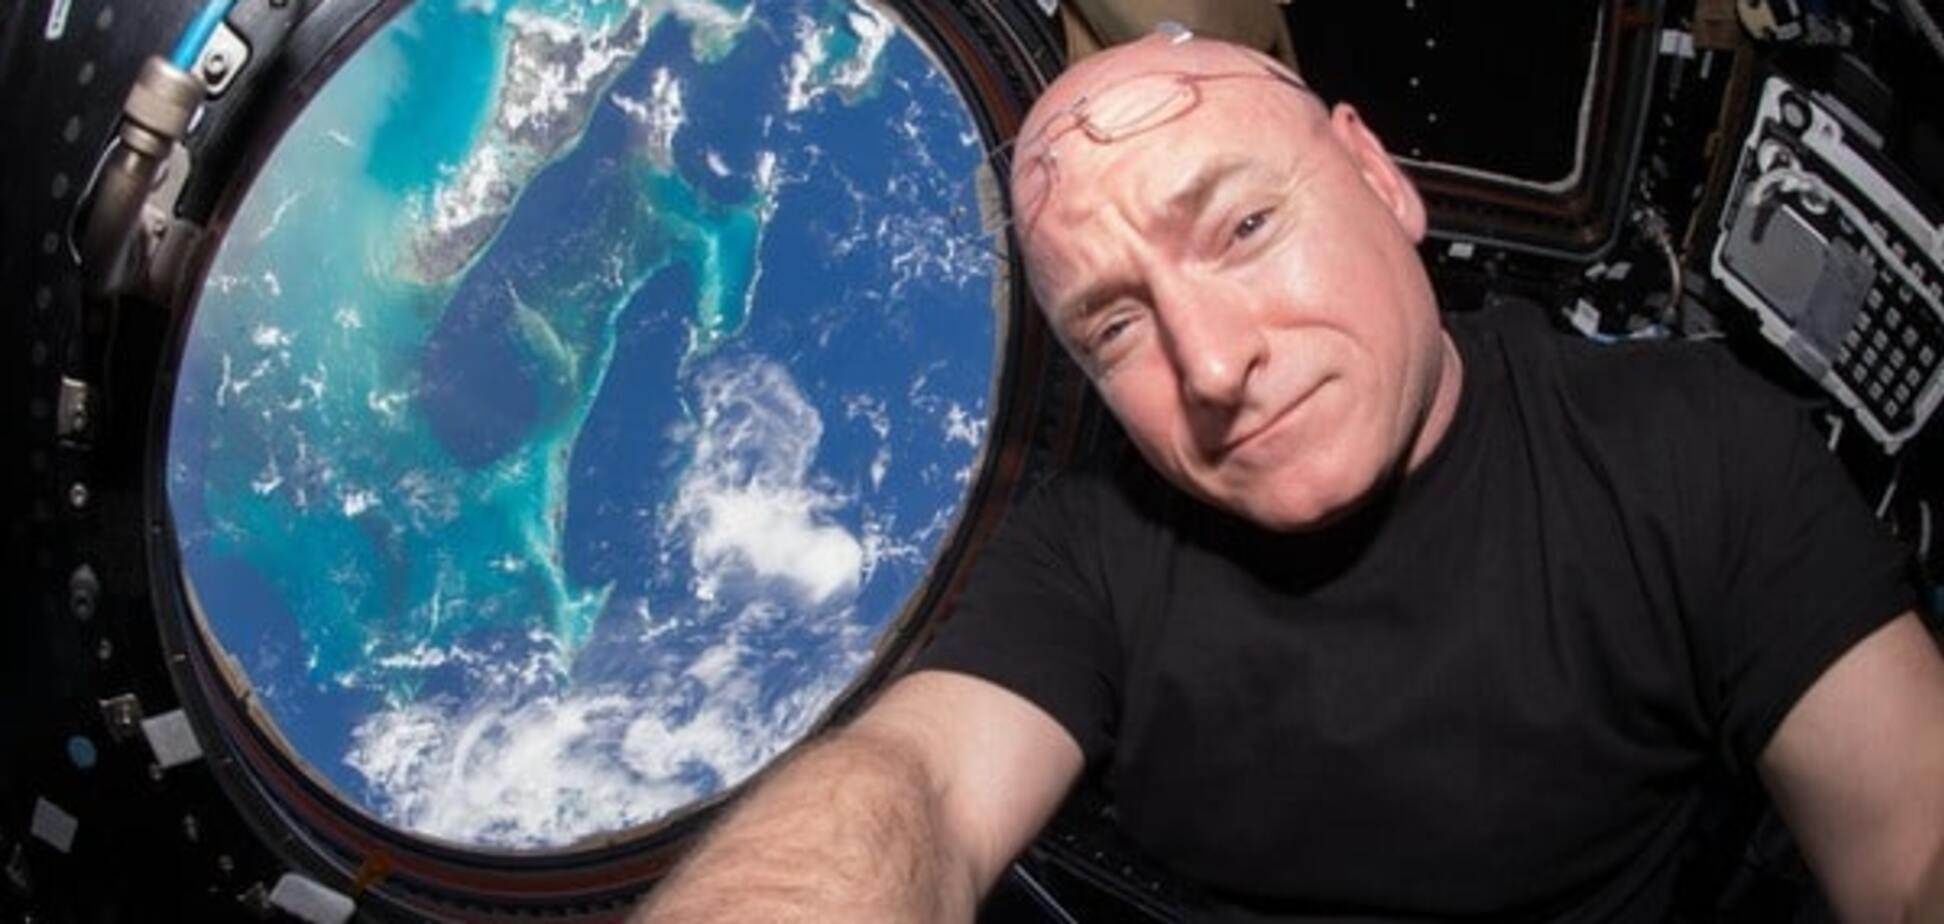 Запах космоса и безумные сны: астронавт рассказал о жизни на МКС